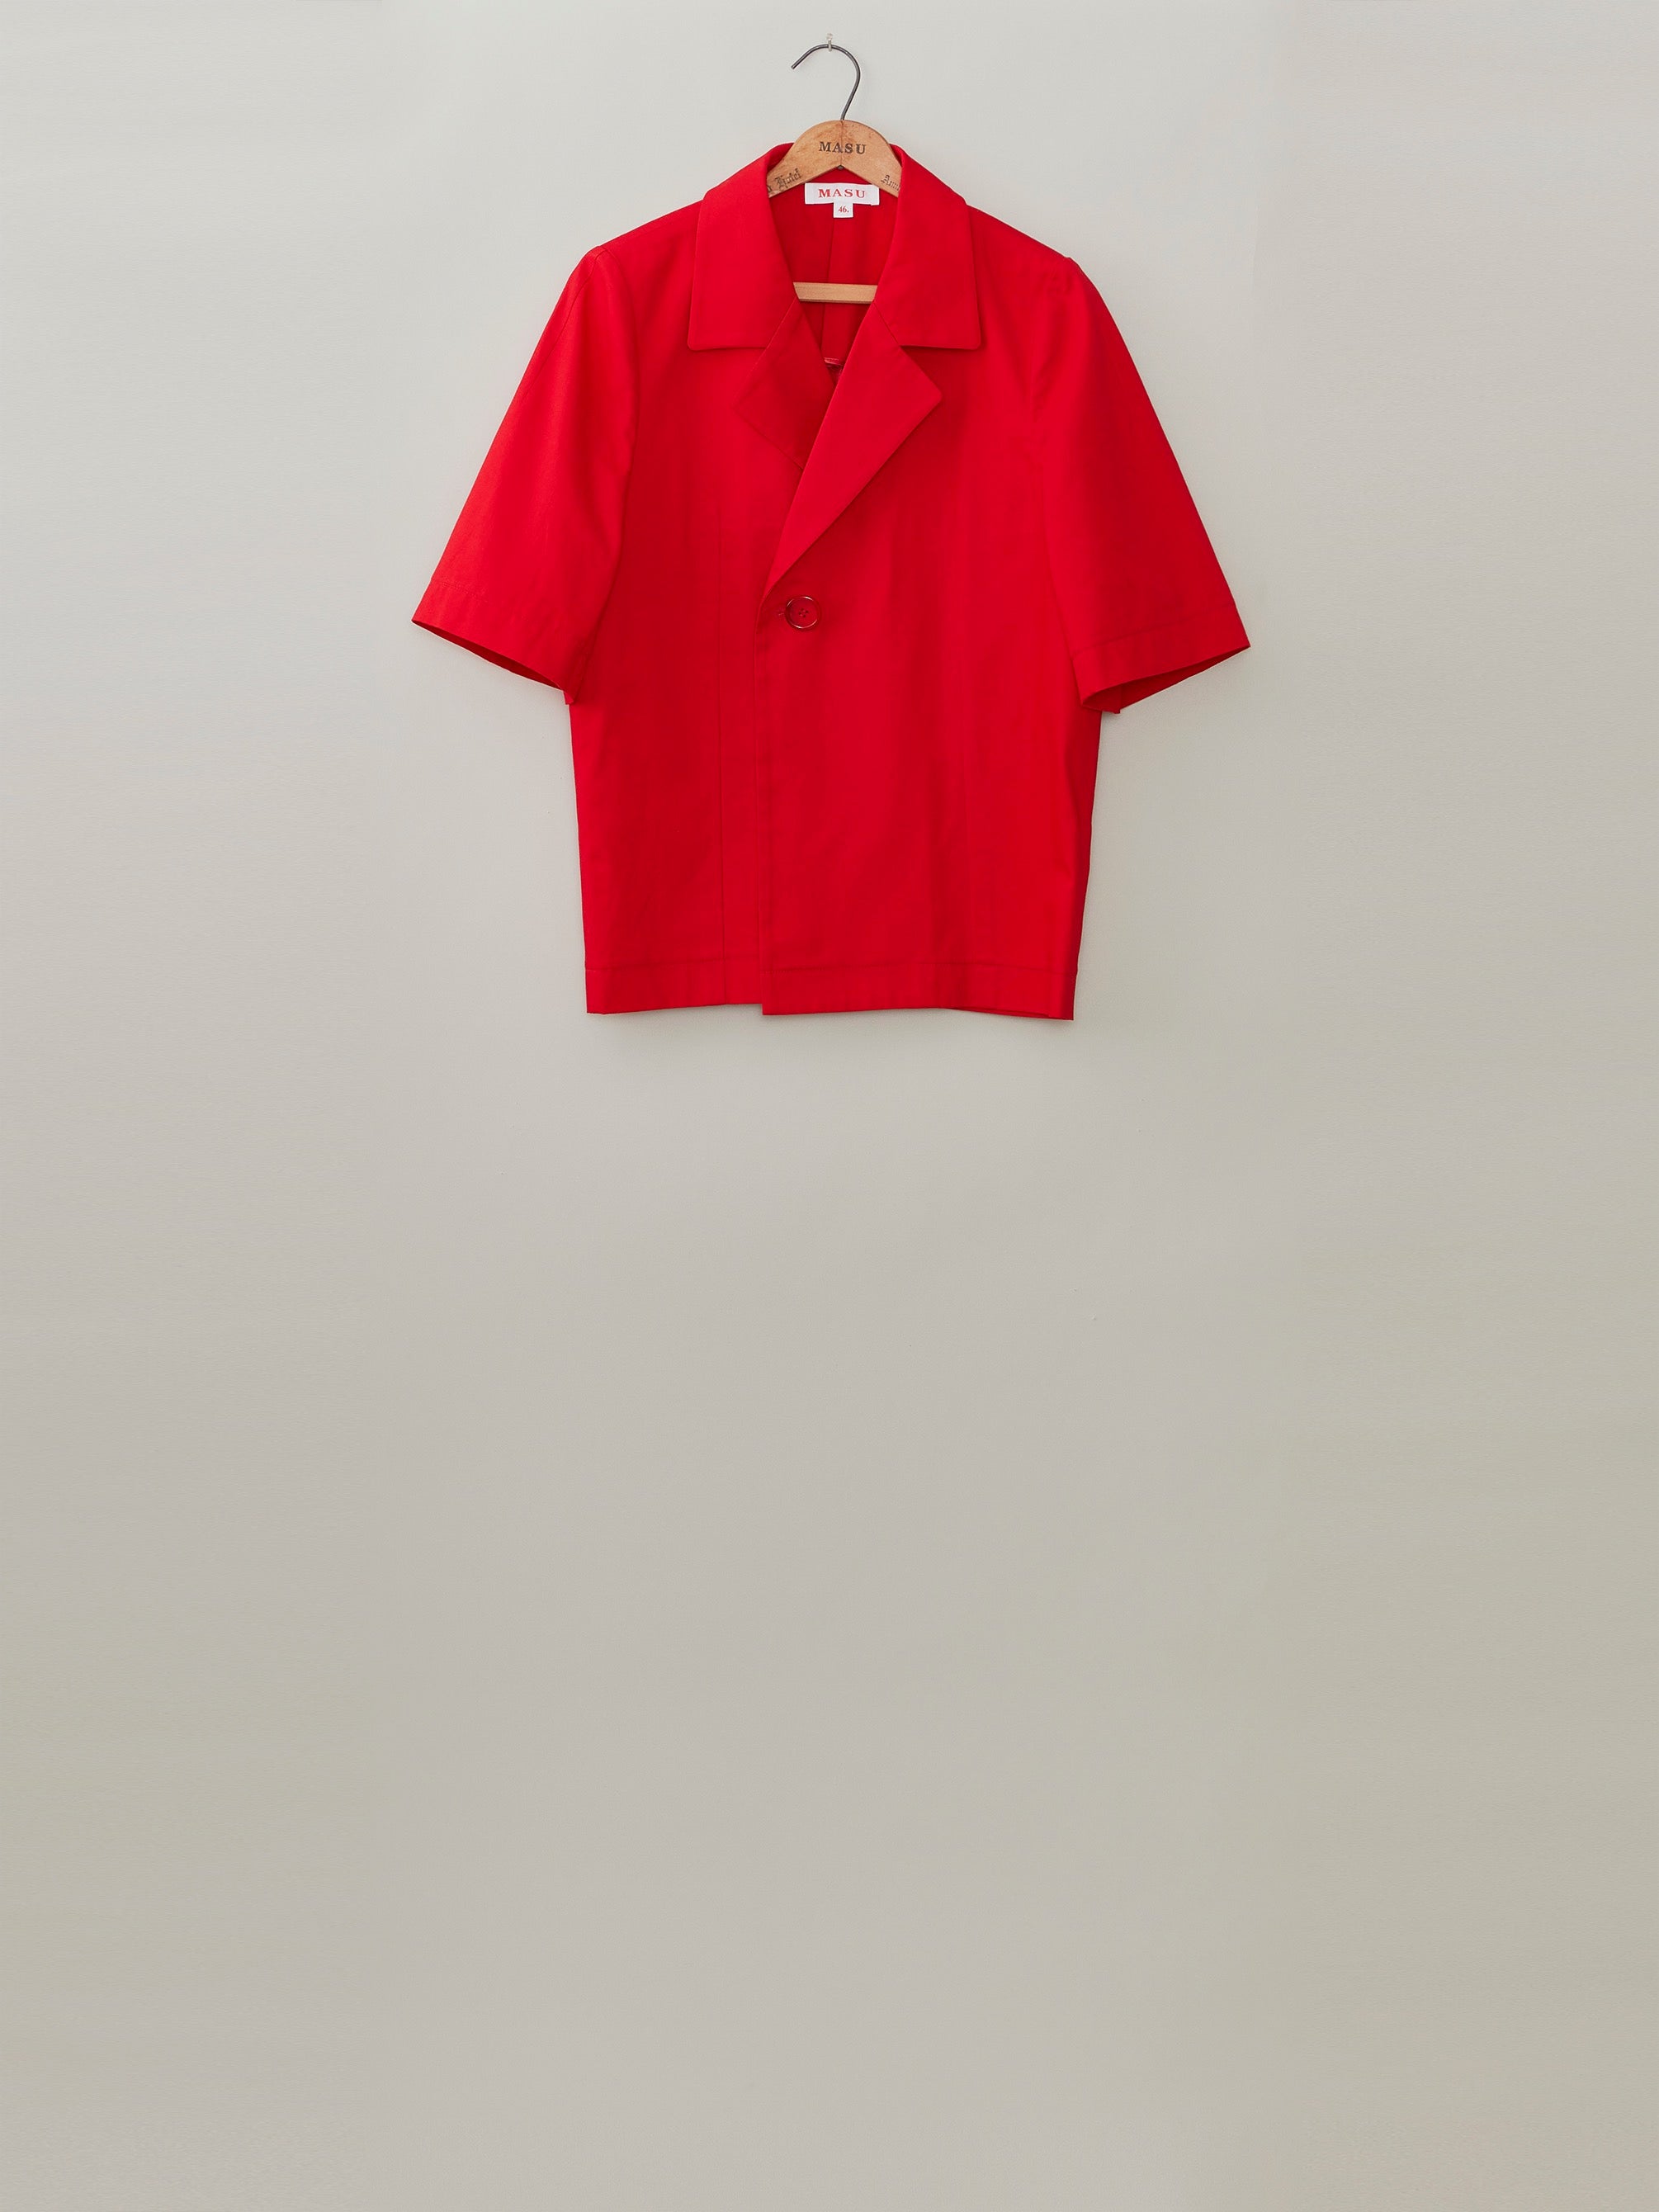 MASU's Half Sleeve Cotton Jacket Red Mail Order | Palette Art